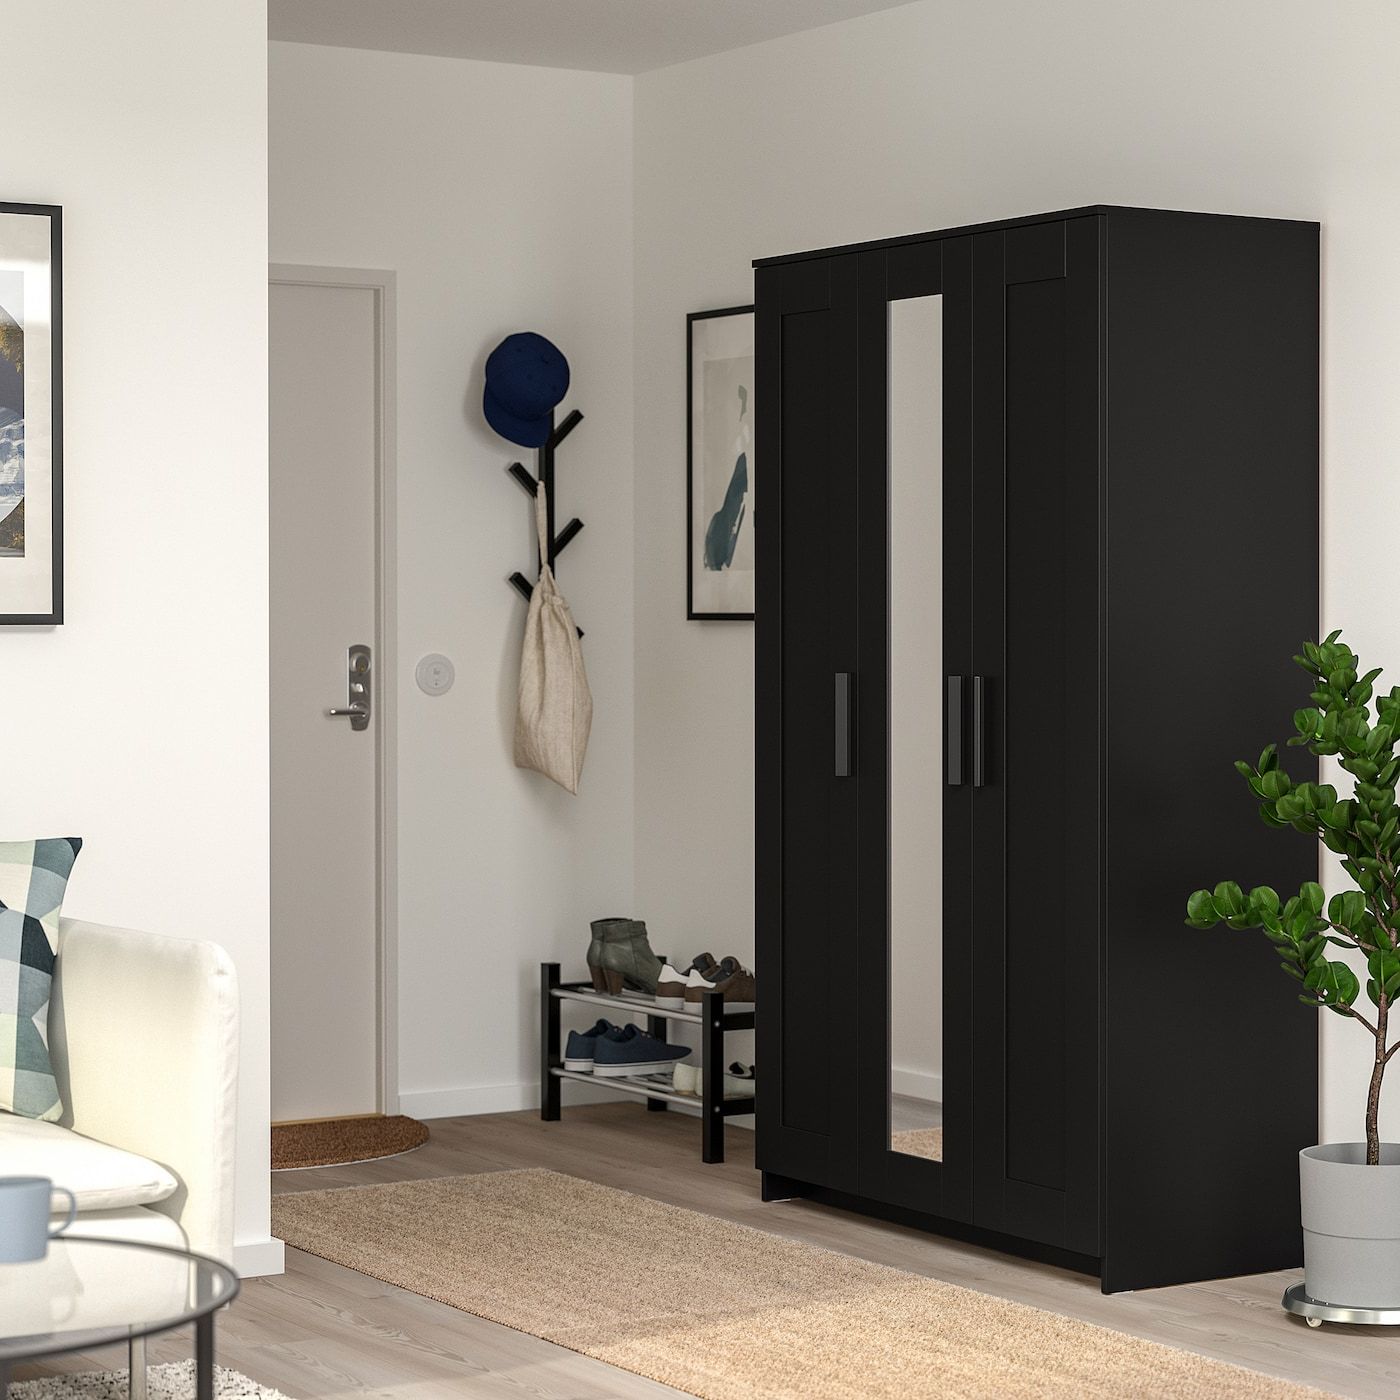 Brimnes Wardrobe With 3 Doors, Black, 46x743/4" – Ikea Inside 3 Door Black Wardrobes (Gallery 1 of 20)